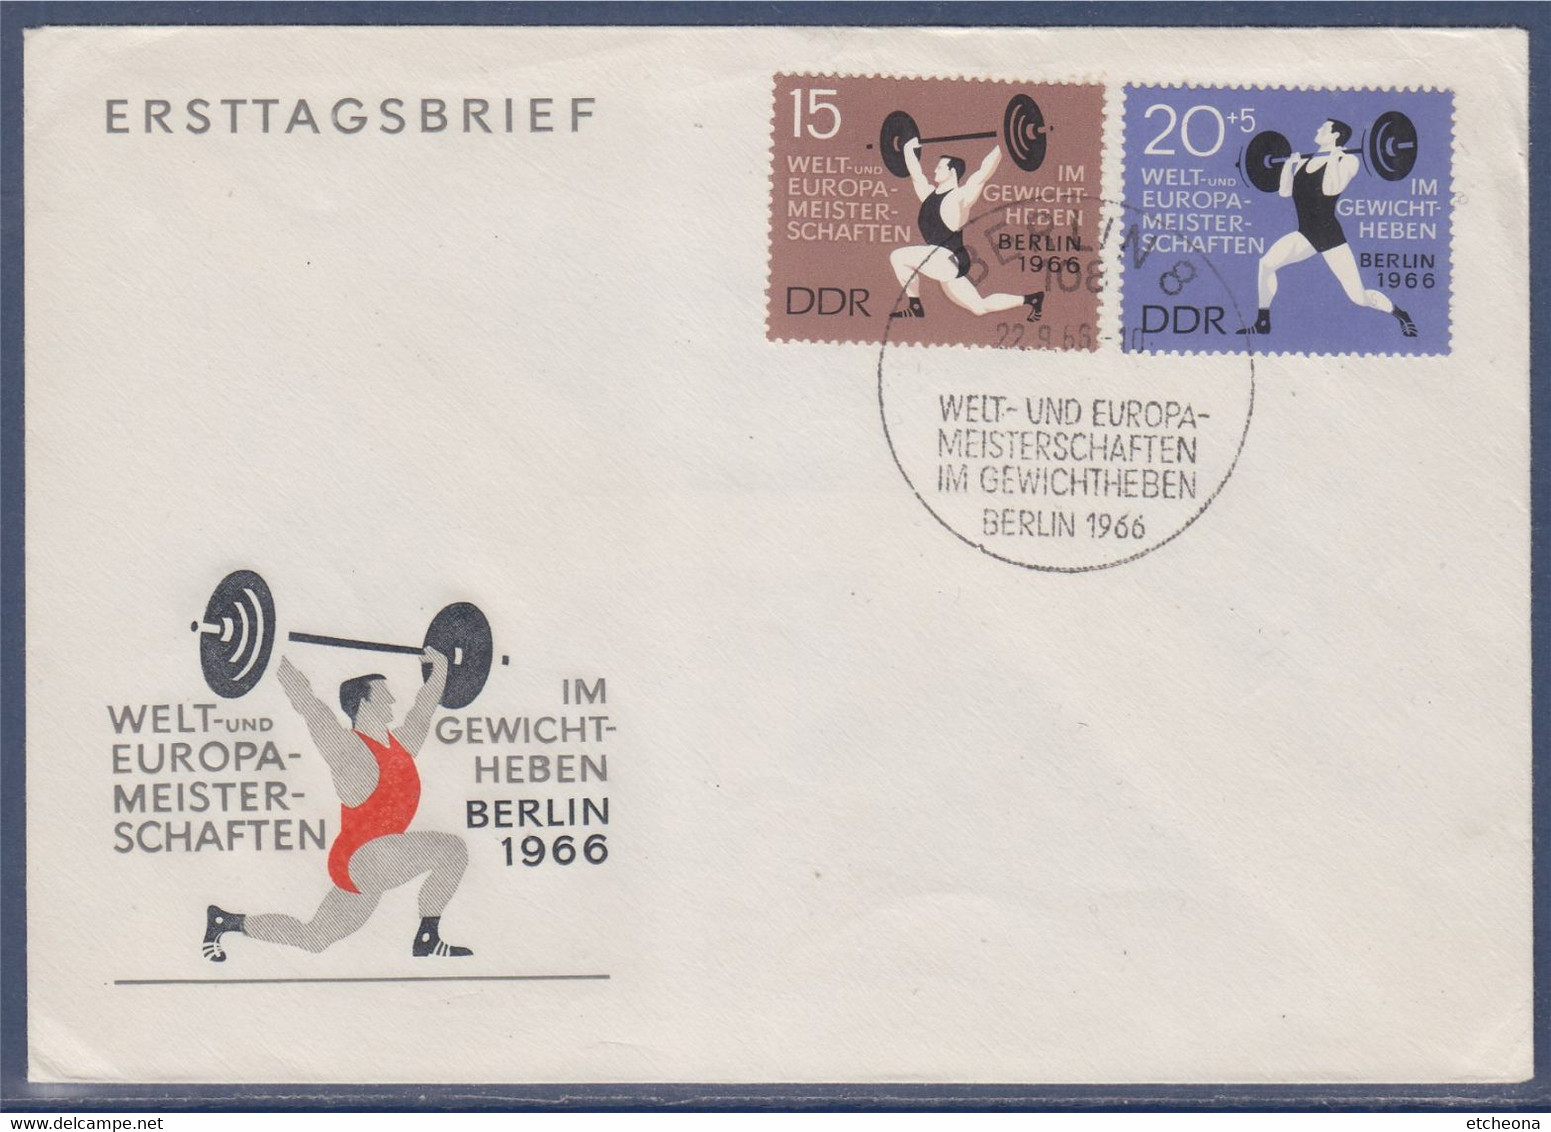 Championnats Du Monde Et D'Europe D'haltérophilie Berlin 1966 Enveloppe 2 Timbres Allemagne - Haltérophilie